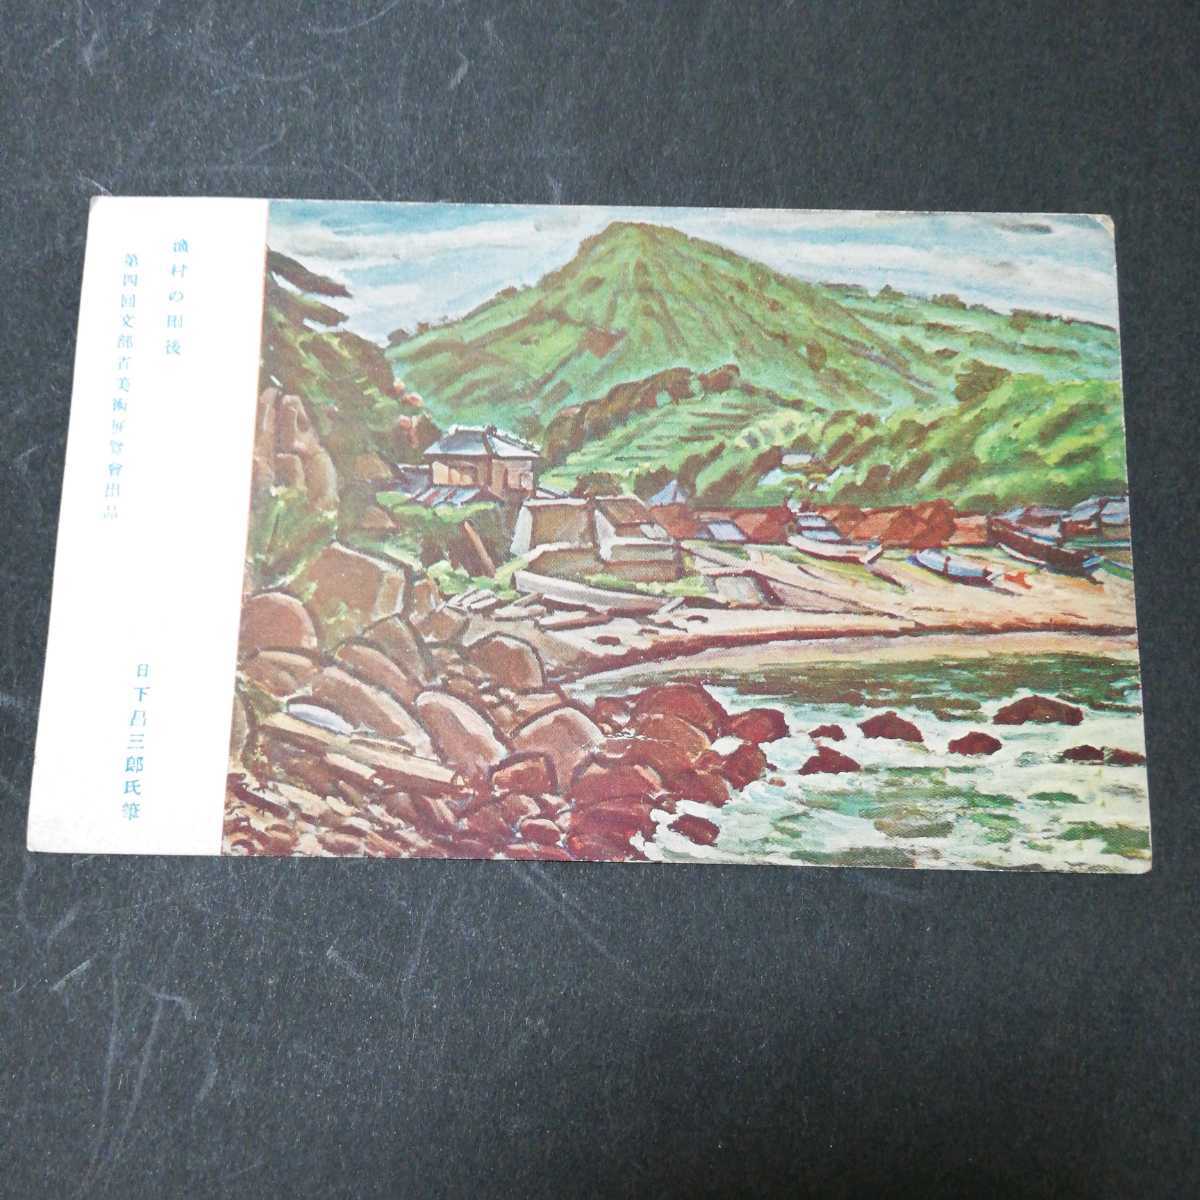 Cartes postales : Village de pêcheurs après la pluie par Shozaburo Kusaka Cartes postales Peintures par Ryohin Senka Art, Documents imprimés, Carte postale, Carte postale, autres